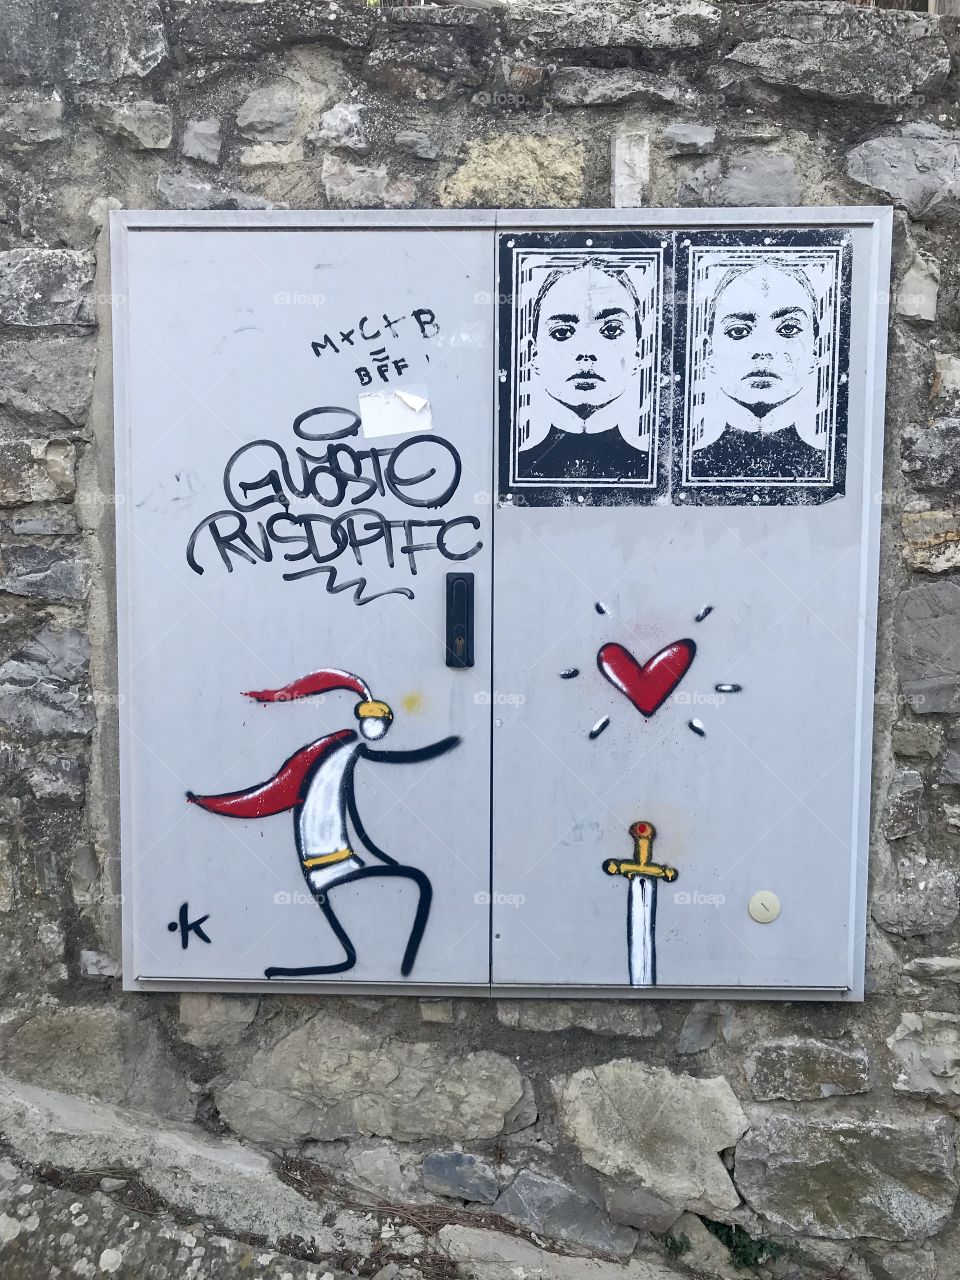 Fun Street art in Arezzo, Italy